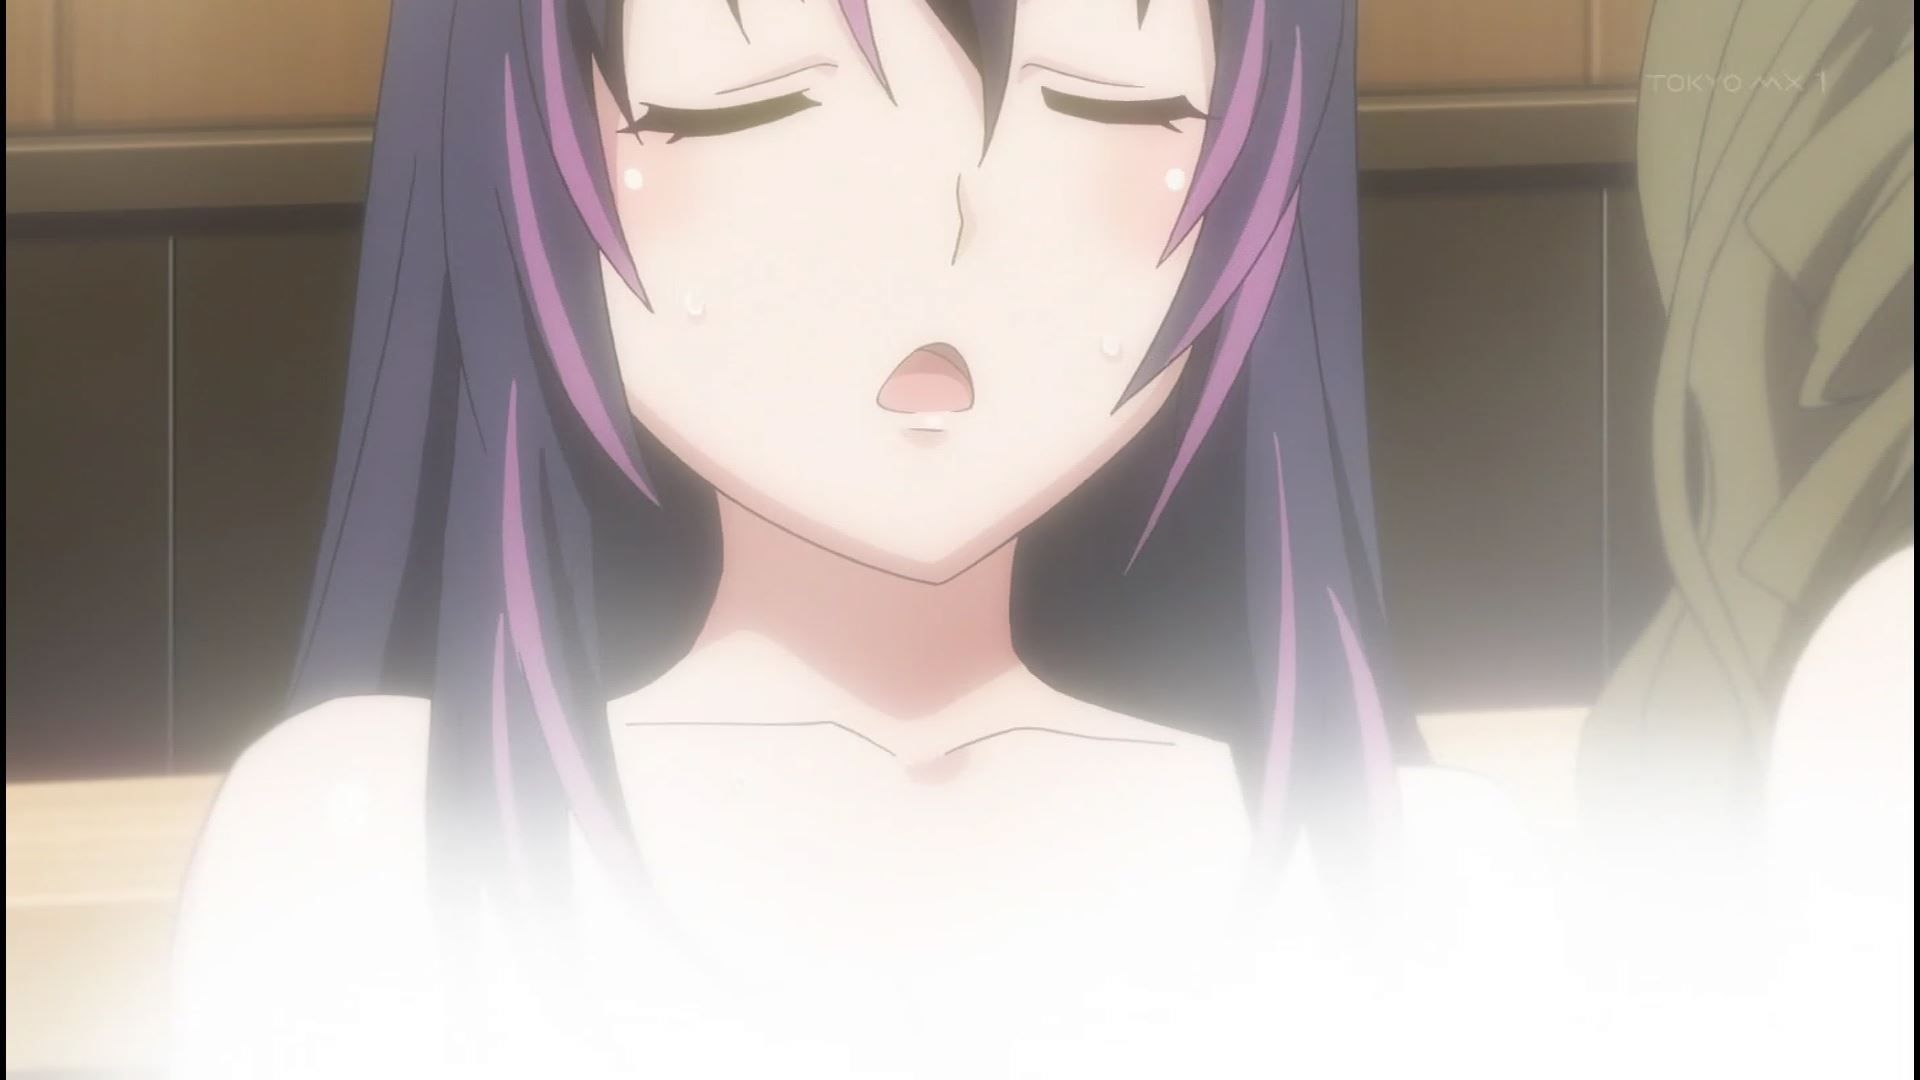 Anime [Kandagawa JETGIRLS] 8 episodes of girls erotic round-view bath bathing scene! 9